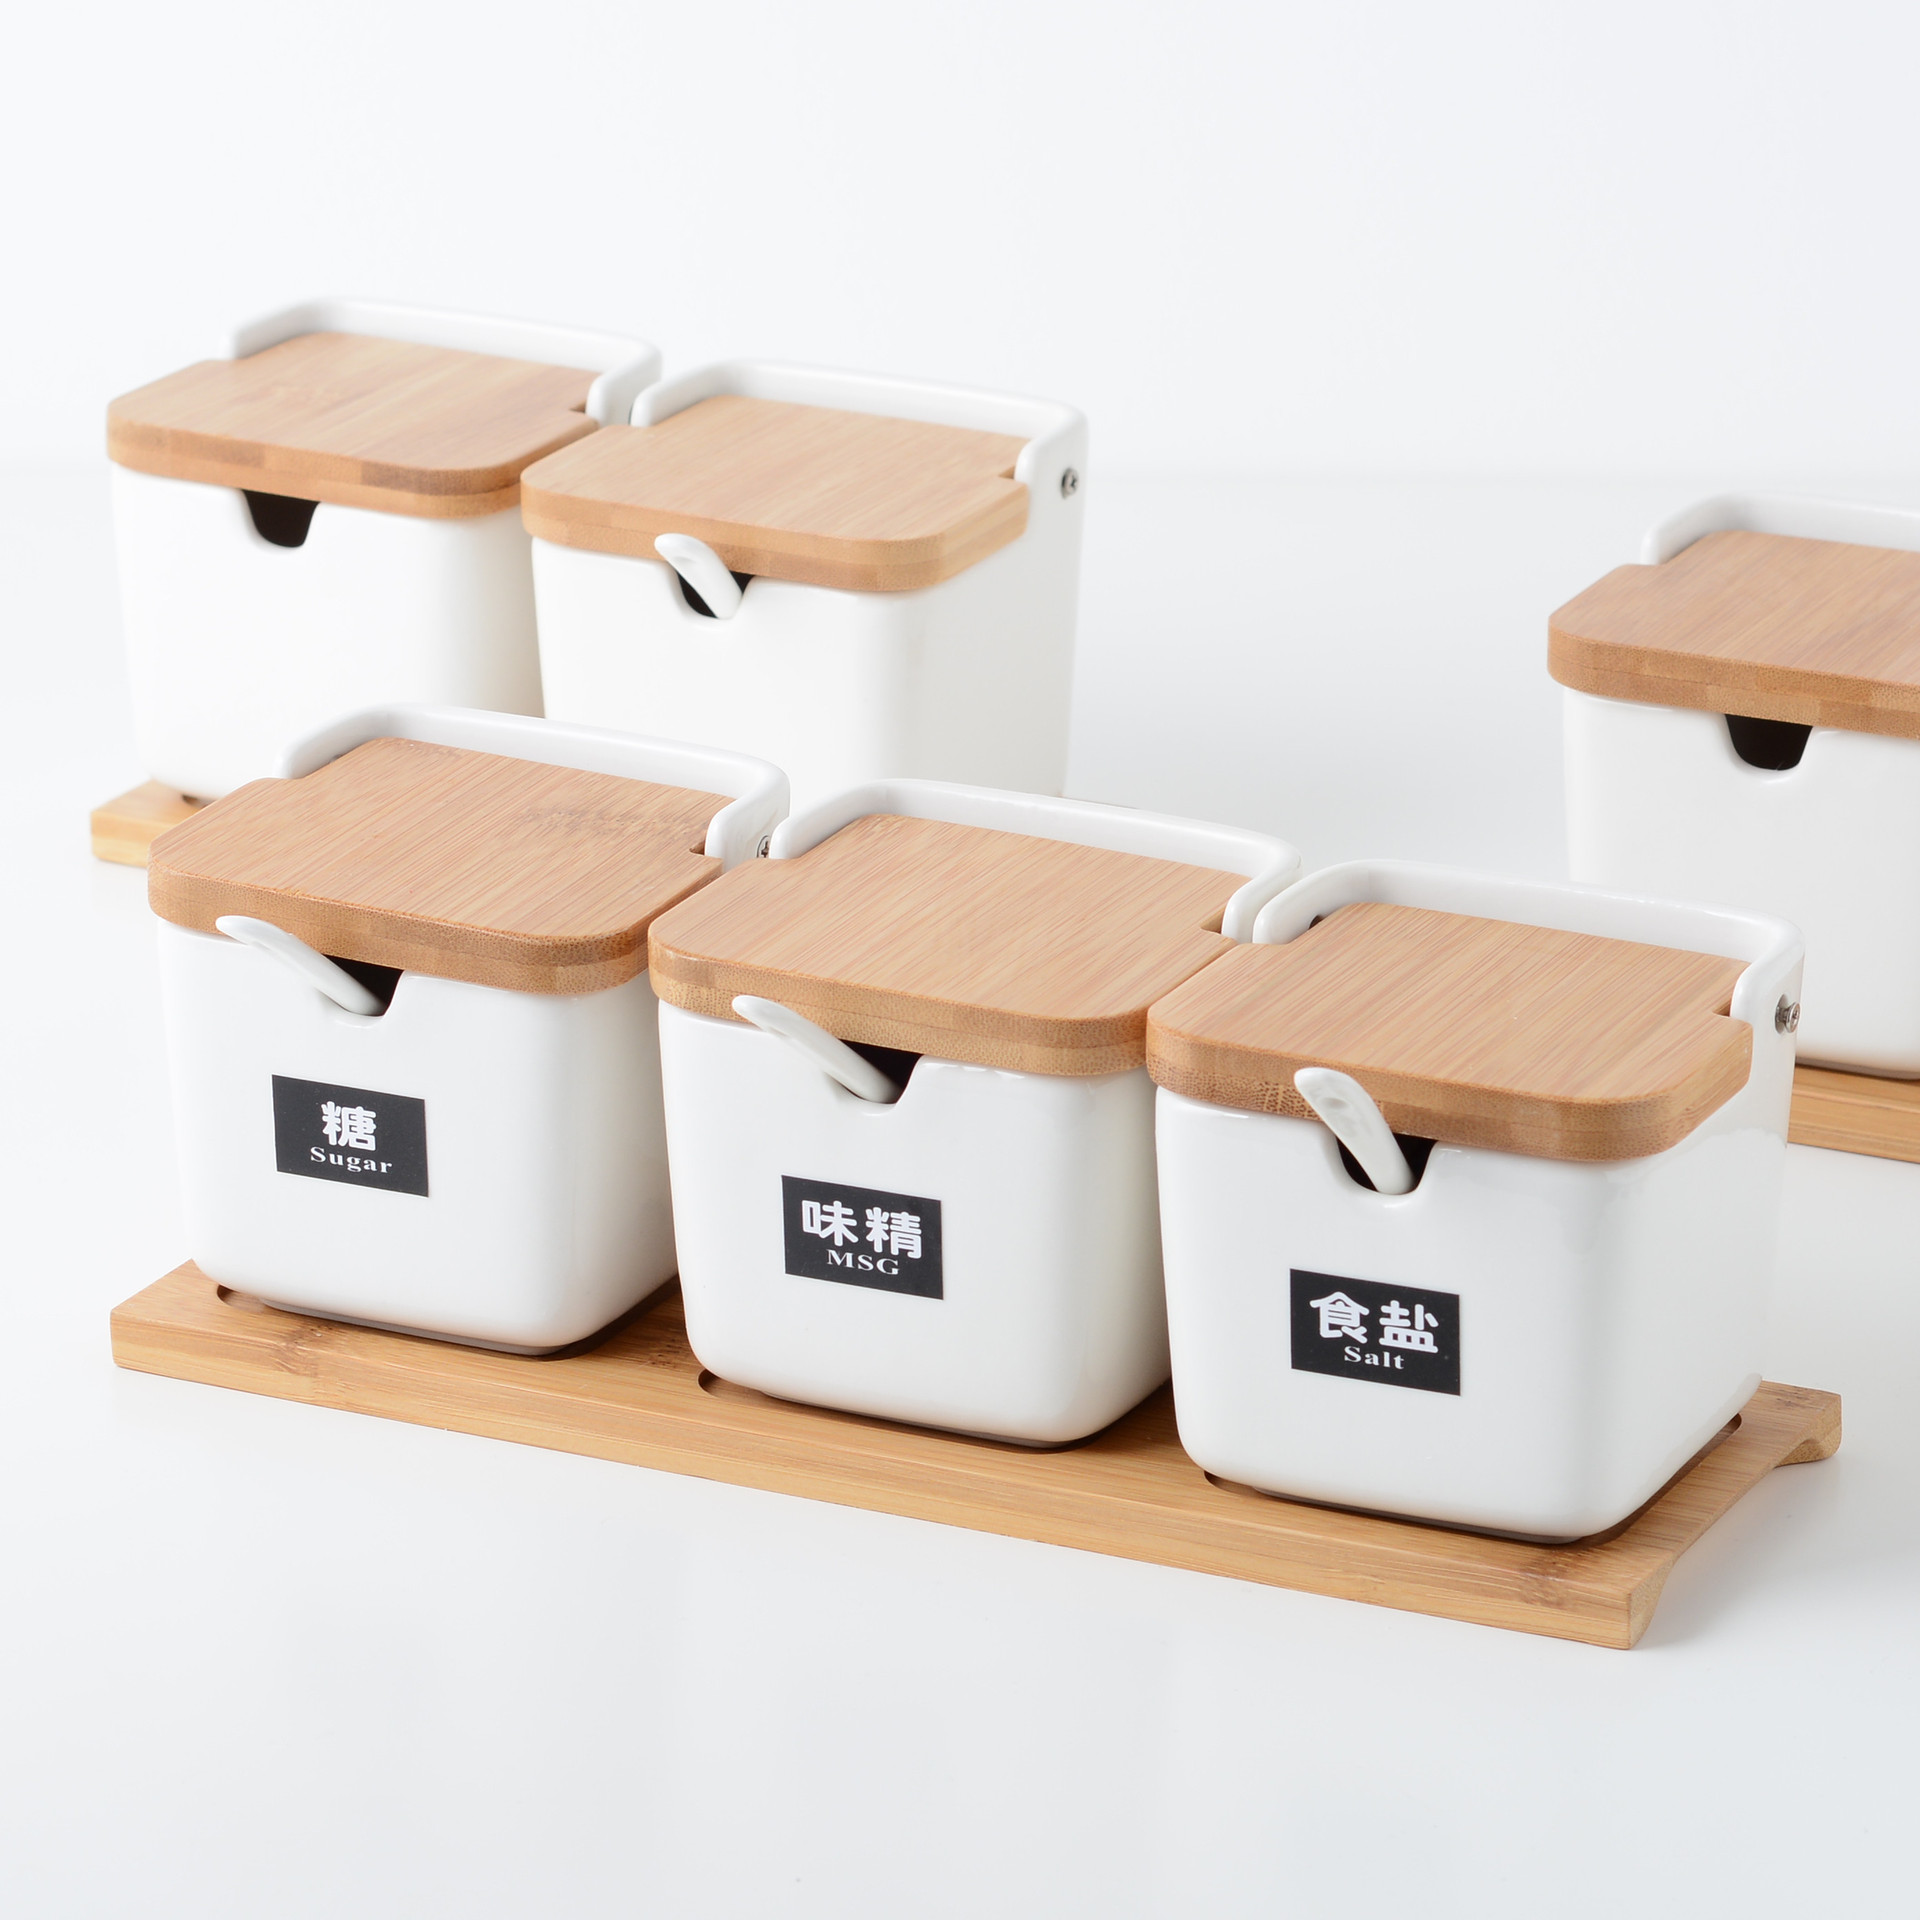 创意厨房方形陶瓷调料罐带木盖家用北欧简约调料盒佐料罐组合套装